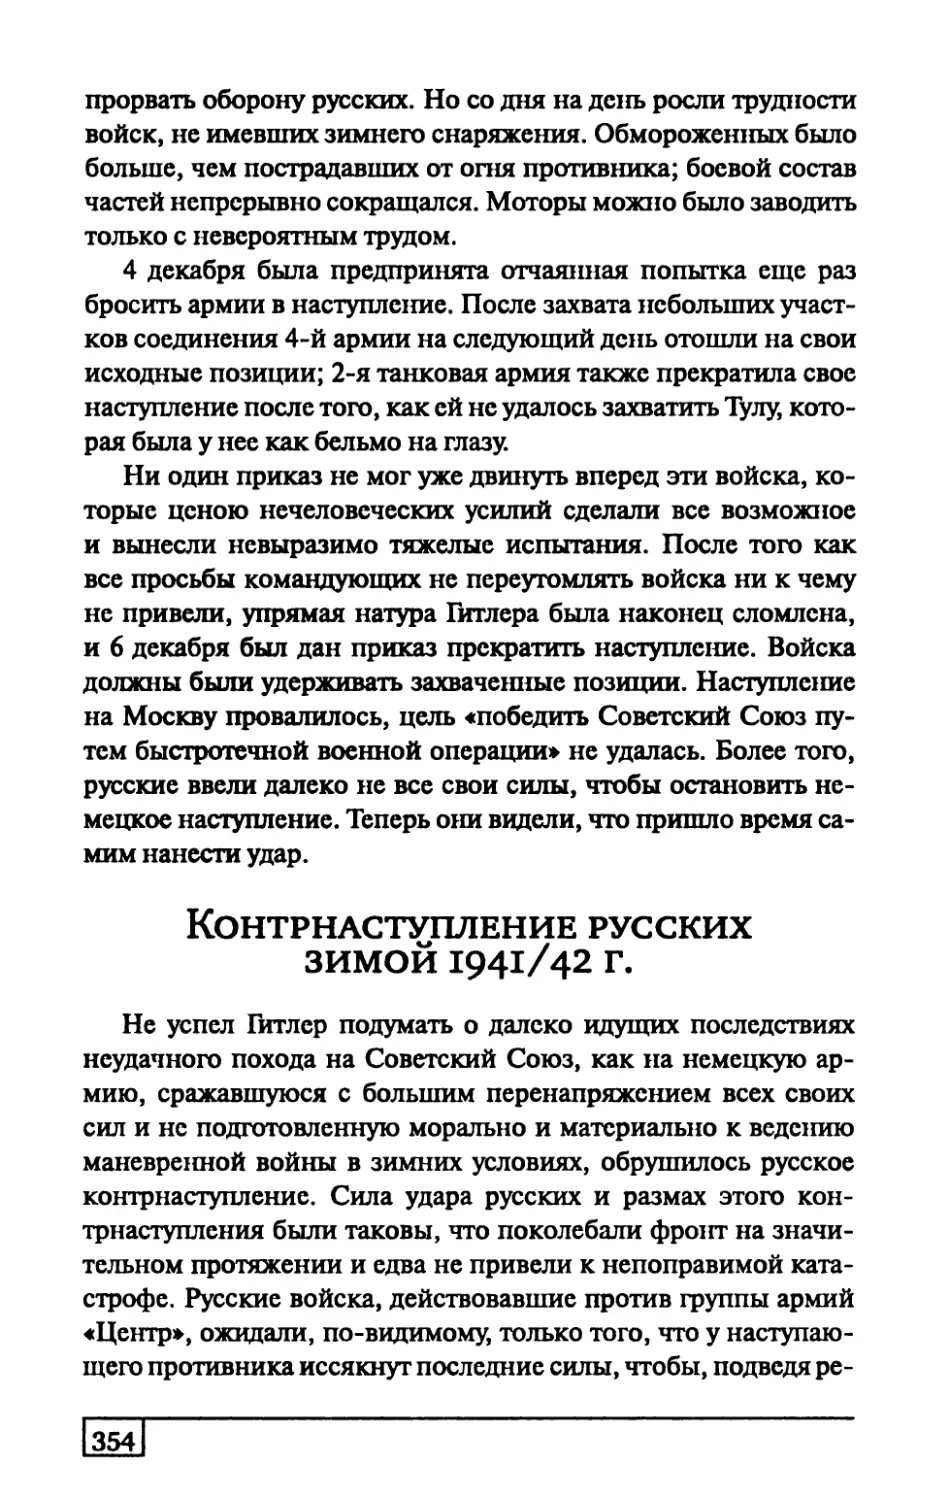 Контрнаступление русских зимой 1941/42 г